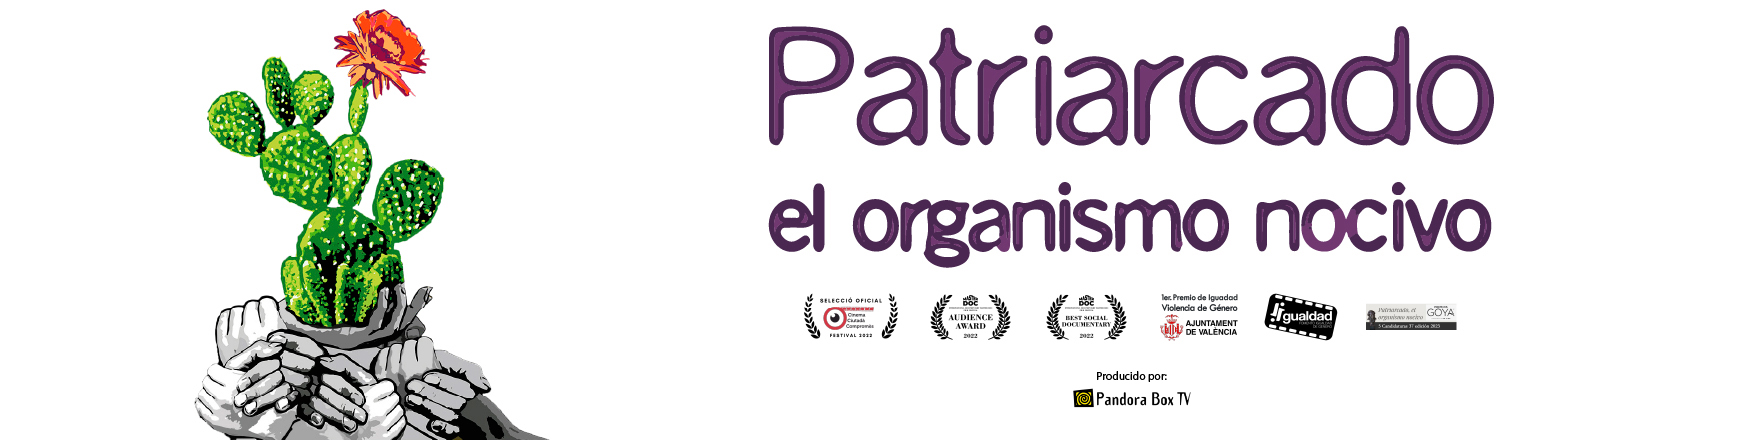 Documental “Patriarcado, el organismo nocivo”